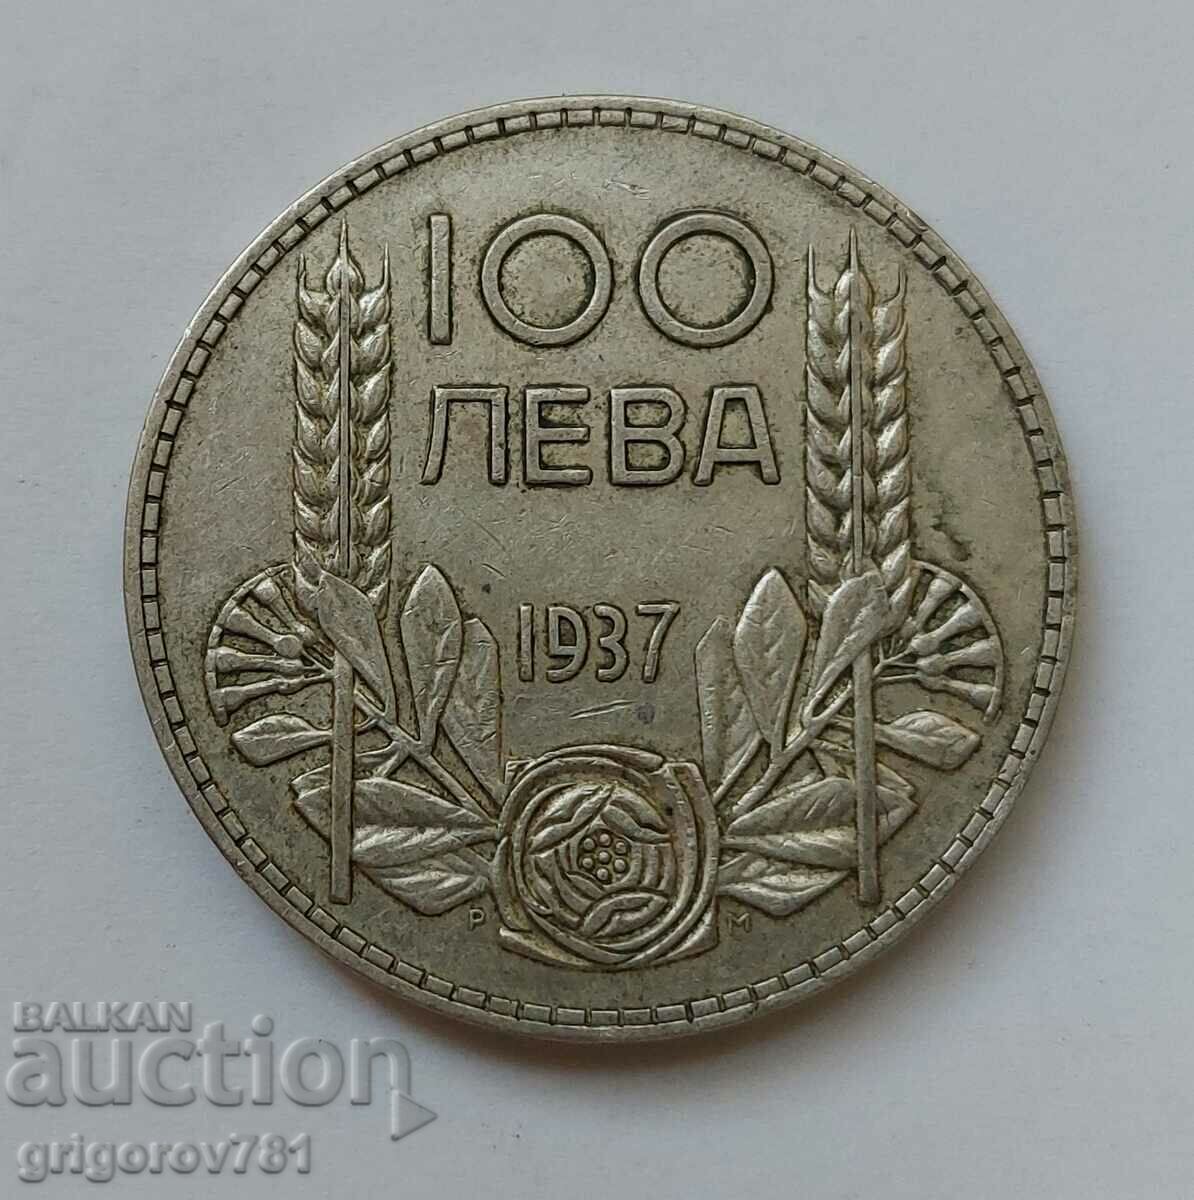 Ασήμι 100 λέβα Βουλγαρία 1937 - ασημένιο νόμισμα #115